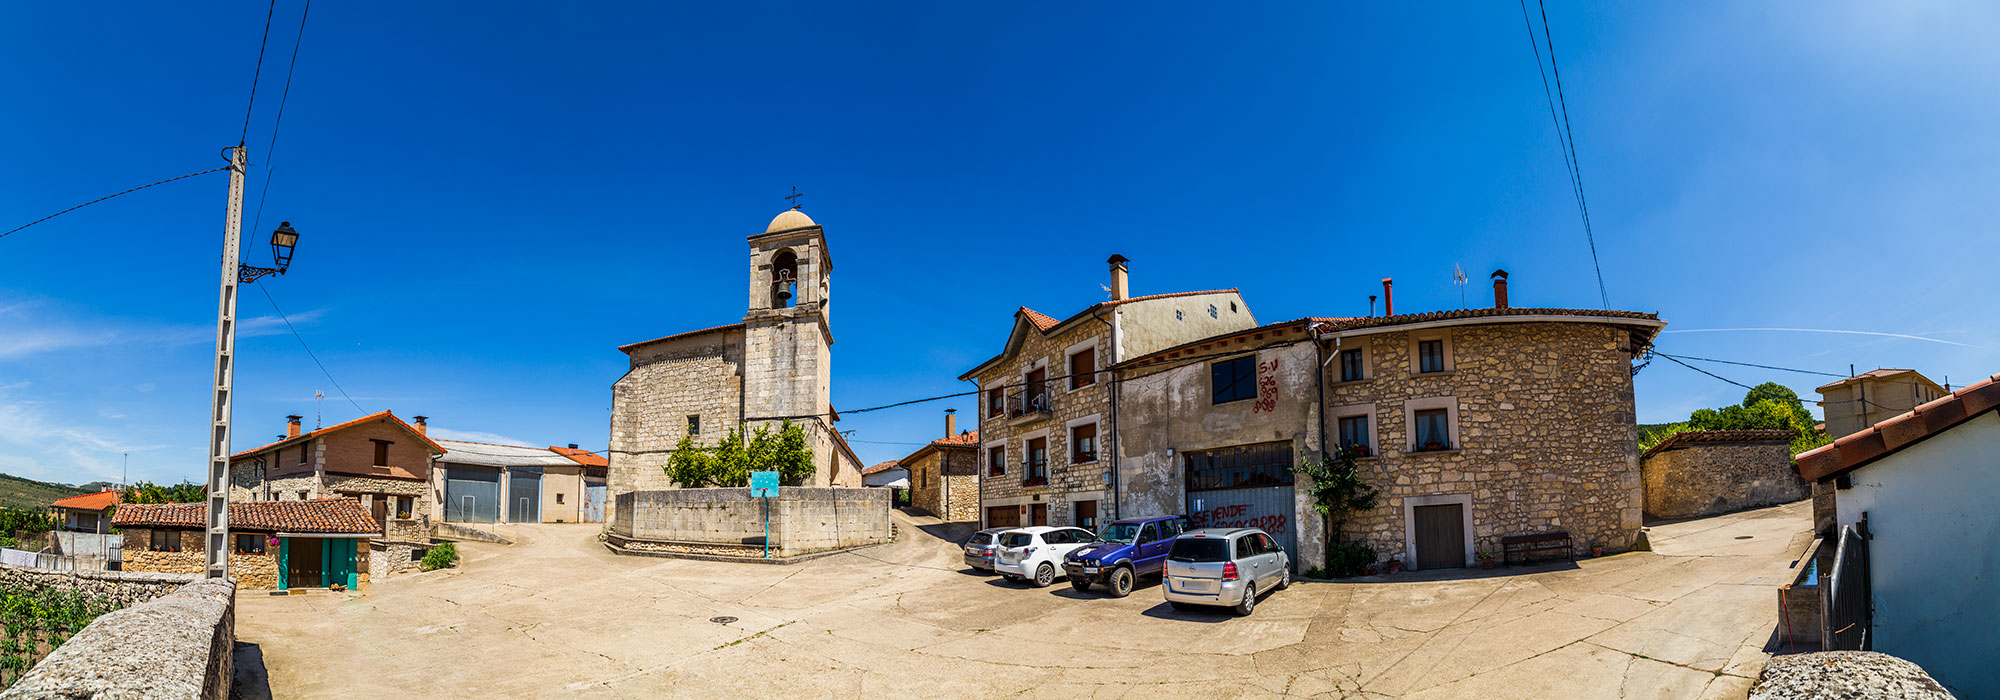 1. Ayuntamiento de Peñacerrada-Urizaharra